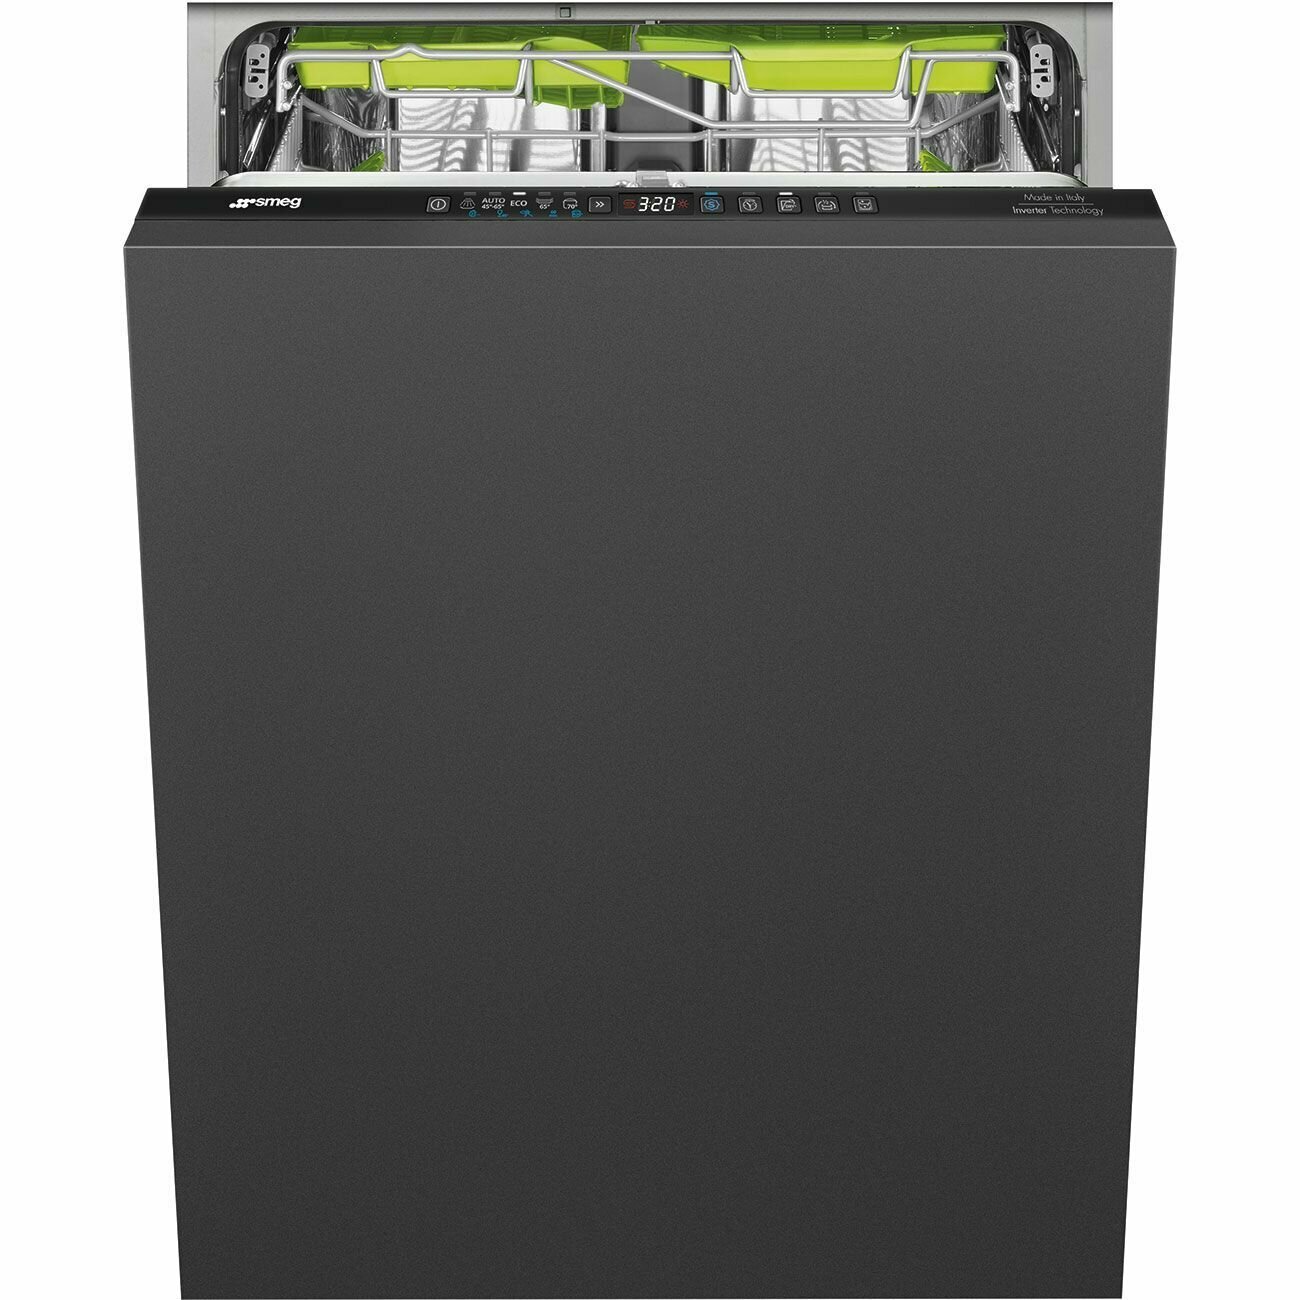 Встраиваемая посудомоечная машина Smeg ST363CL, черная, 60 см, загрузка 13 комплектов, система AquaStop